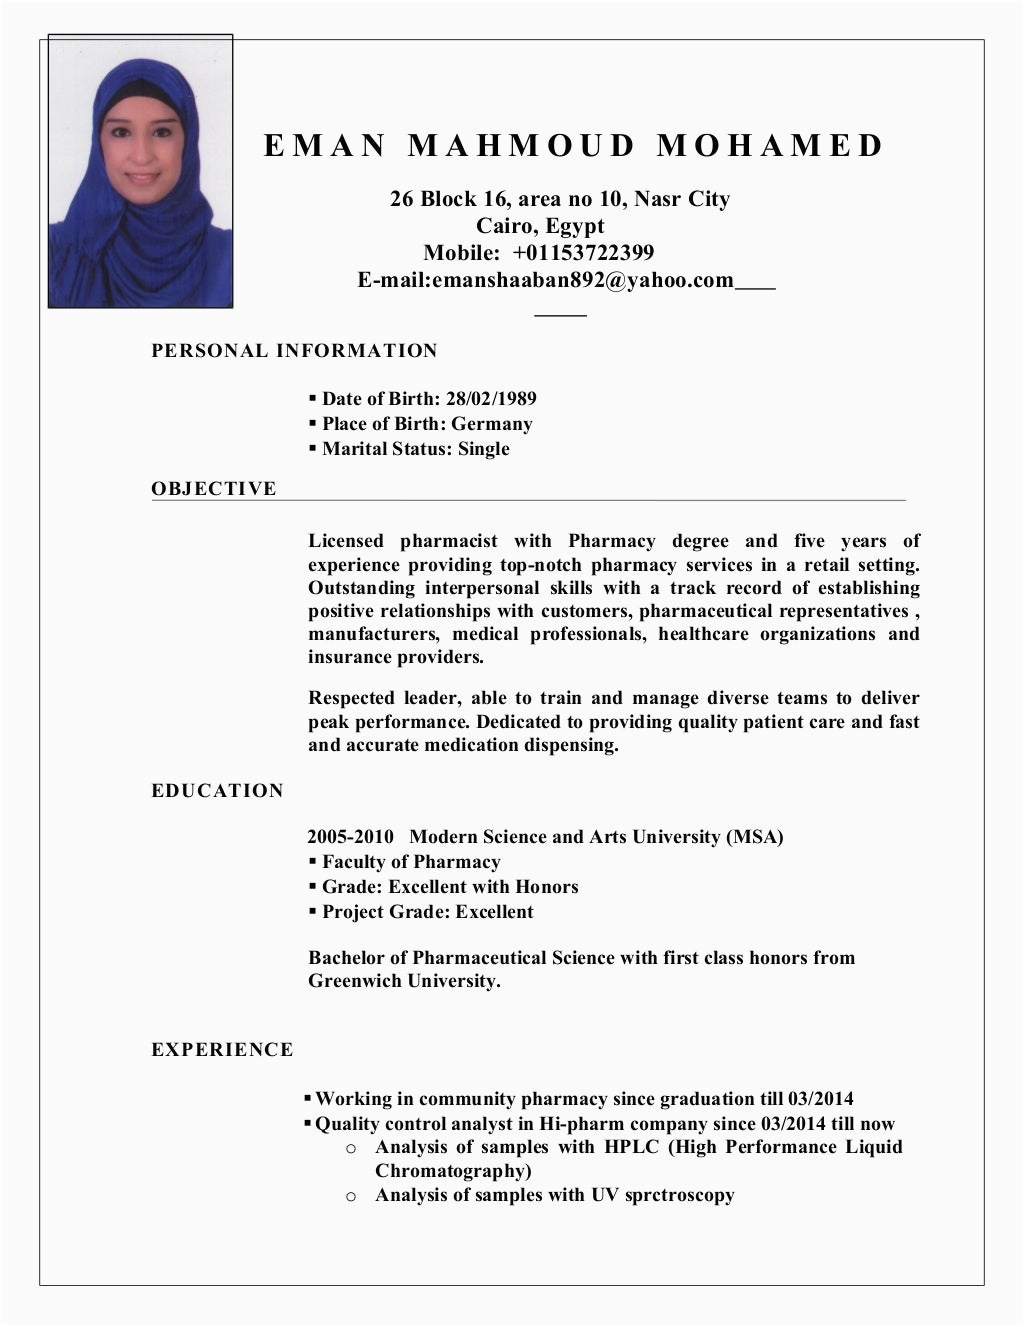 Sample Resume for Pharmacist In the Philippines Pharmacist Eman Shaban Cv